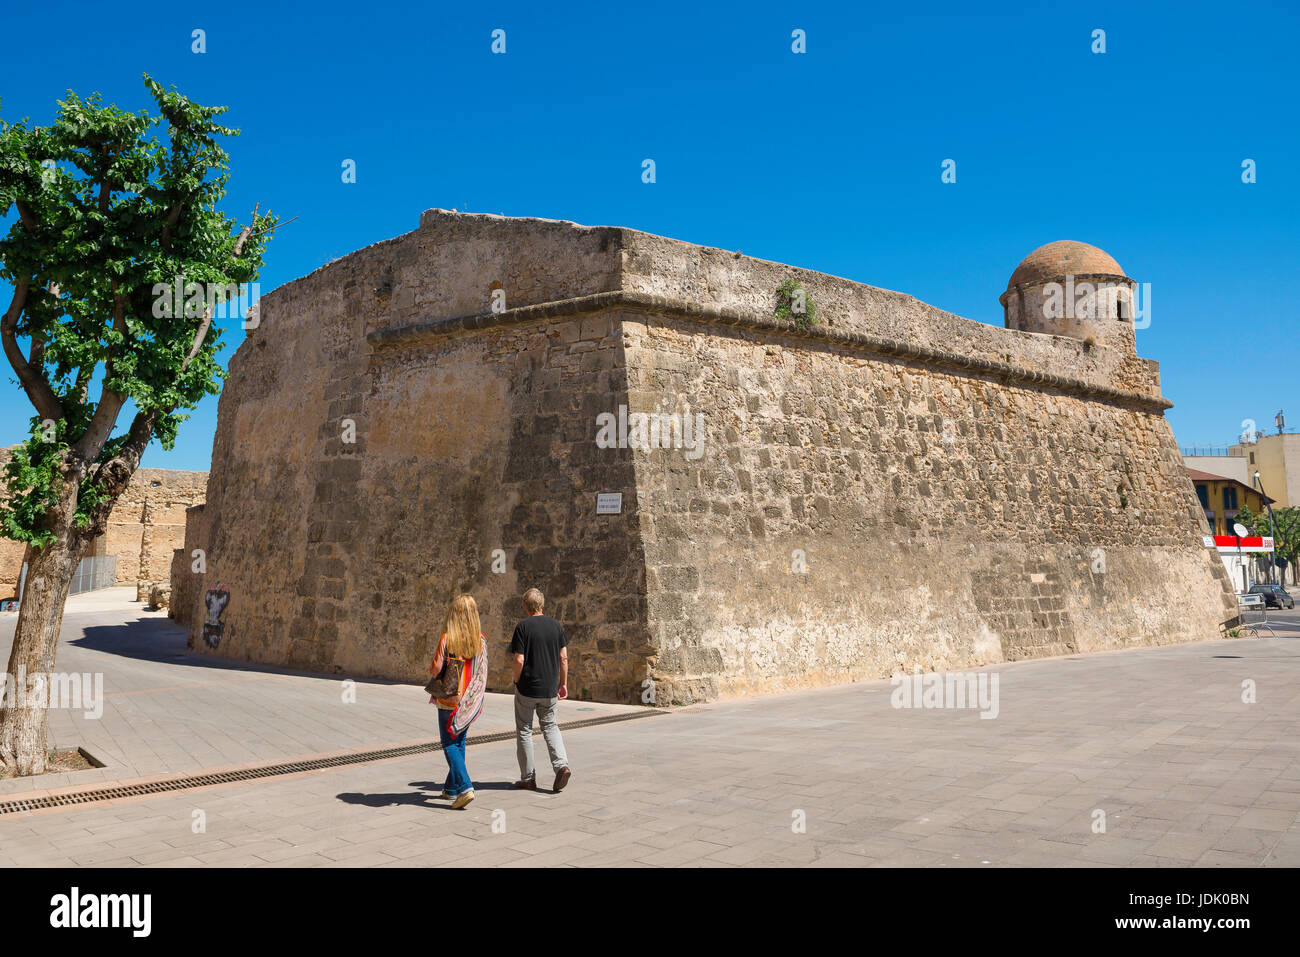 Gehen Sie Alghero Sardinien, ein paar Touristen vorbei an einem Abschnitt der Stadtmauer bekannt als der Bastione La Maddalena in der Altstadt von Alghero, Sardinien. Stockfoto